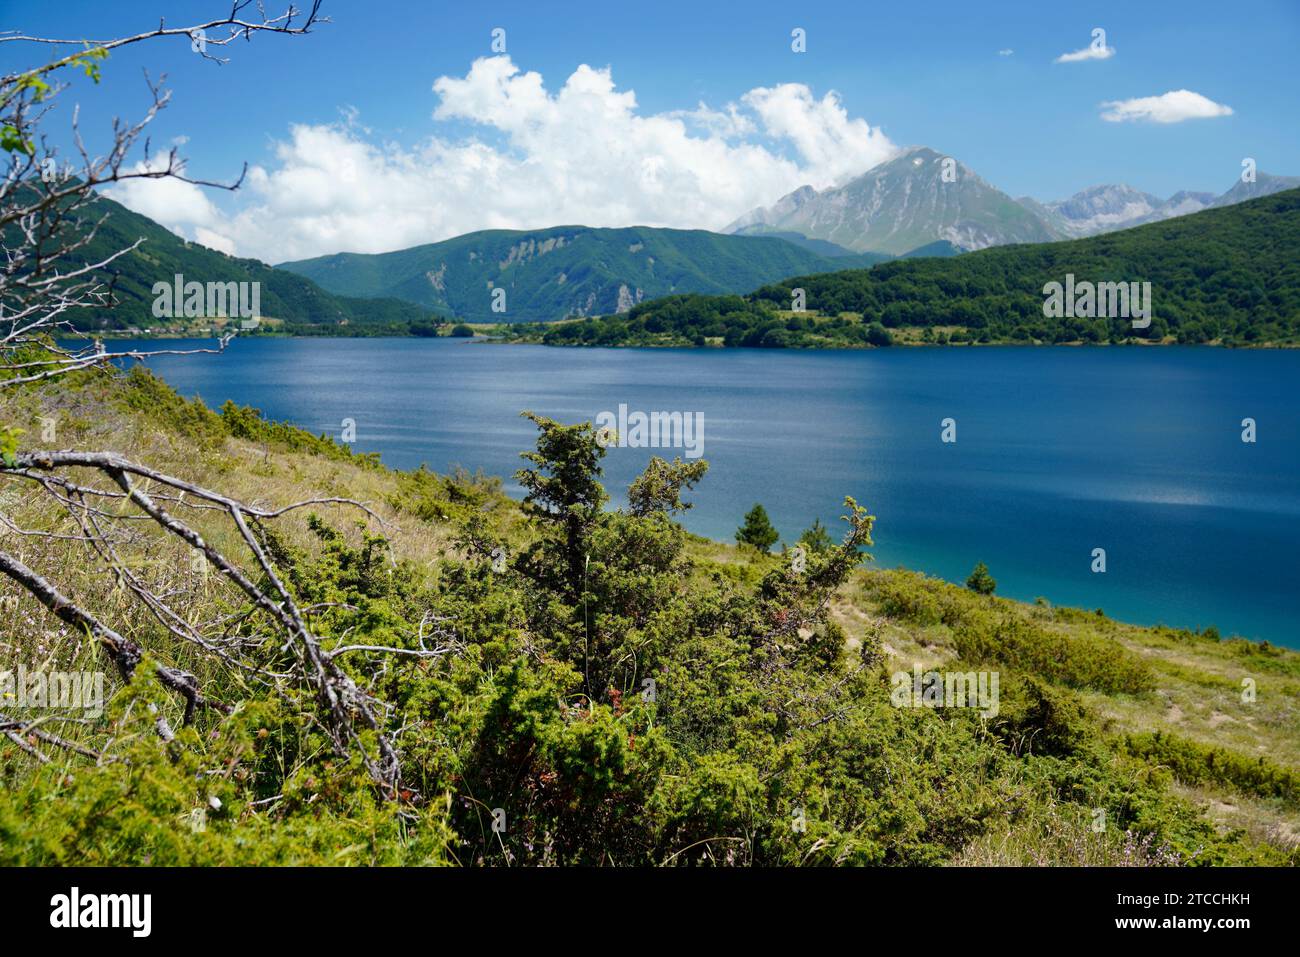 Lake Campotosto,Gran Sasso and Monti della Laga National Park,Province of L'Aquila,Abruzzo region, Italy Stock Photo